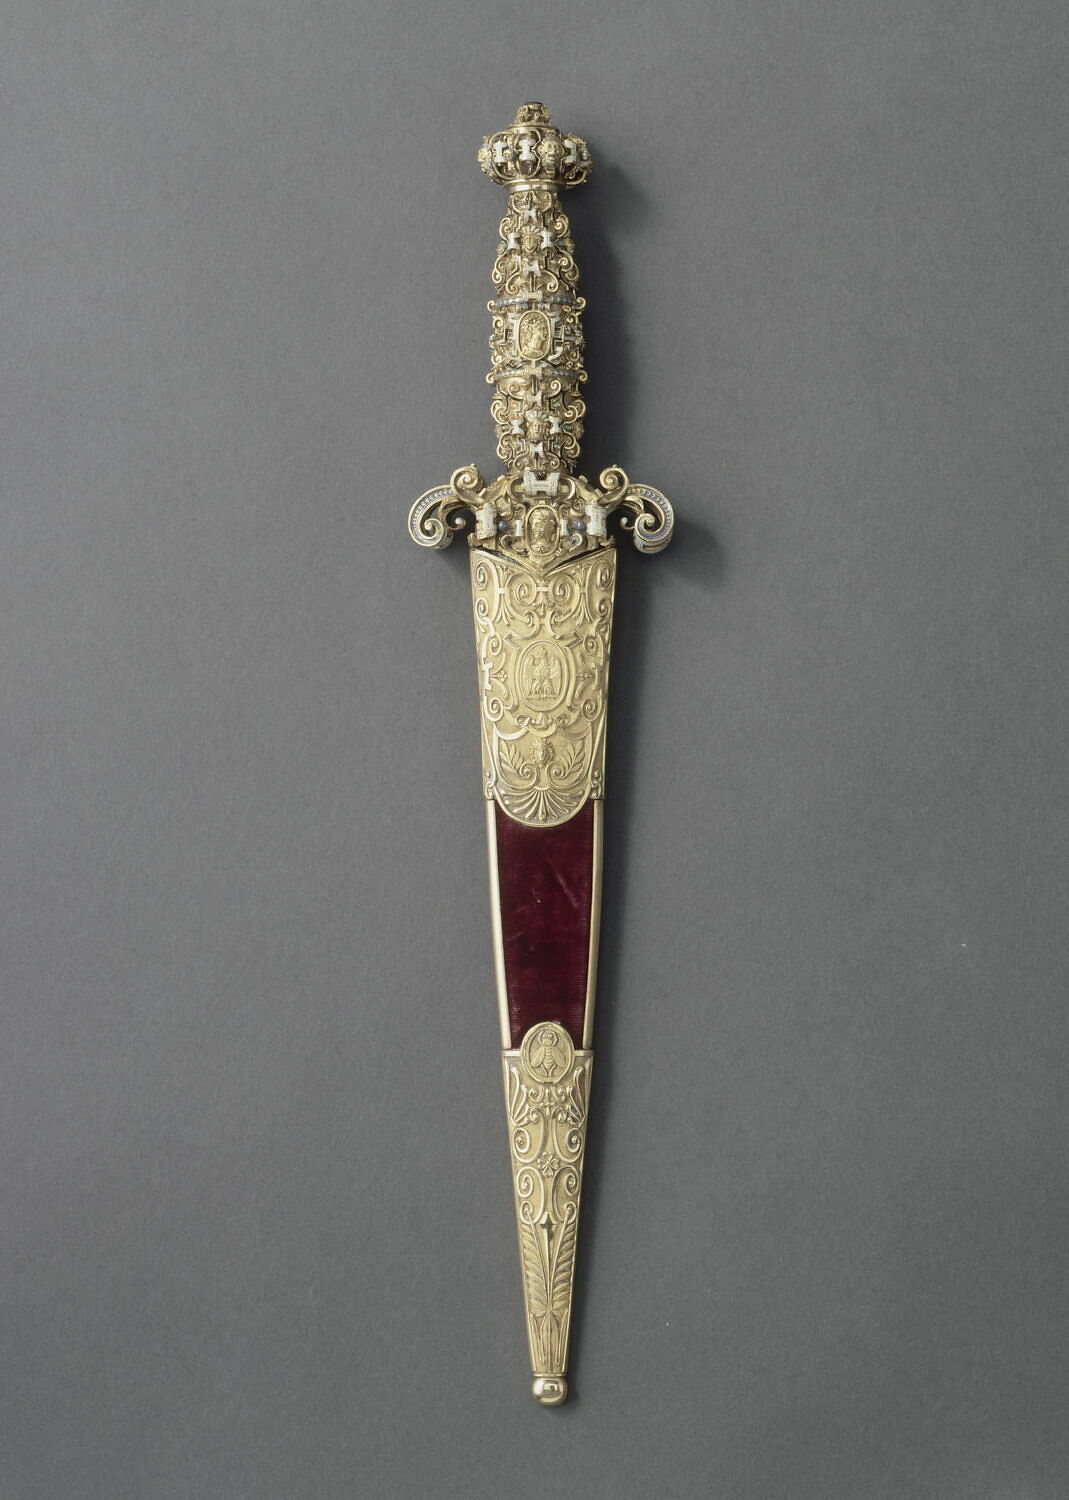 Grand_Master_of_Malta's_dagger__ (Louvre).JPG